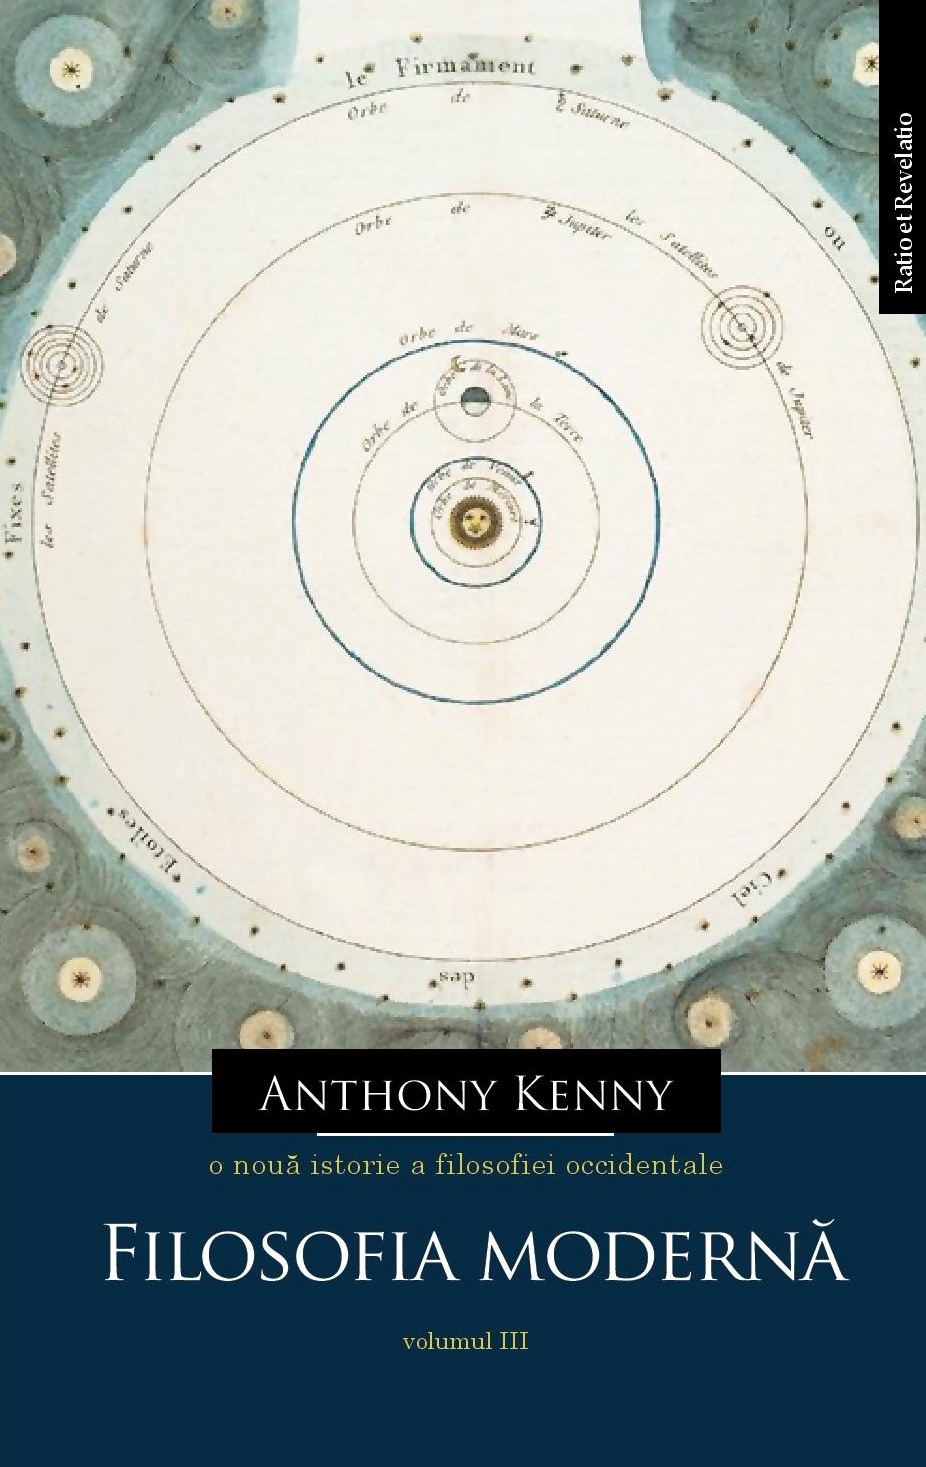 O noua istorie a filosofiei occidentale, volumul III | Anthony Kenny carturesti.ro imagine 2022 cartile.ro